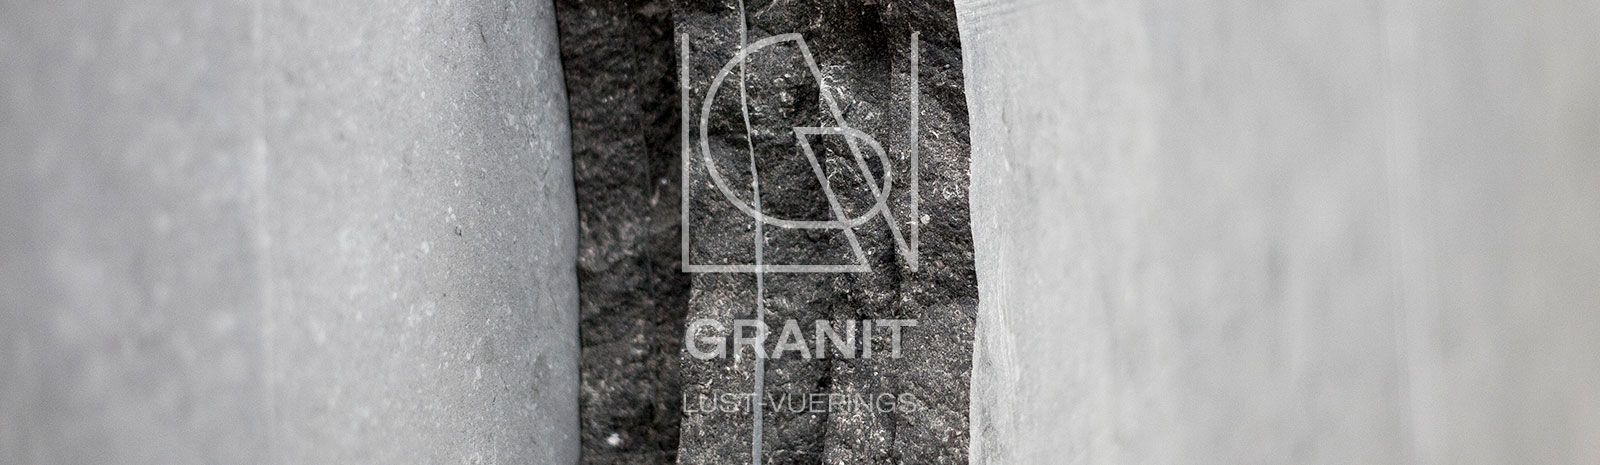 Granit Lust-Vuerings - Granit Lust-Vuerings - Blauwe Steen